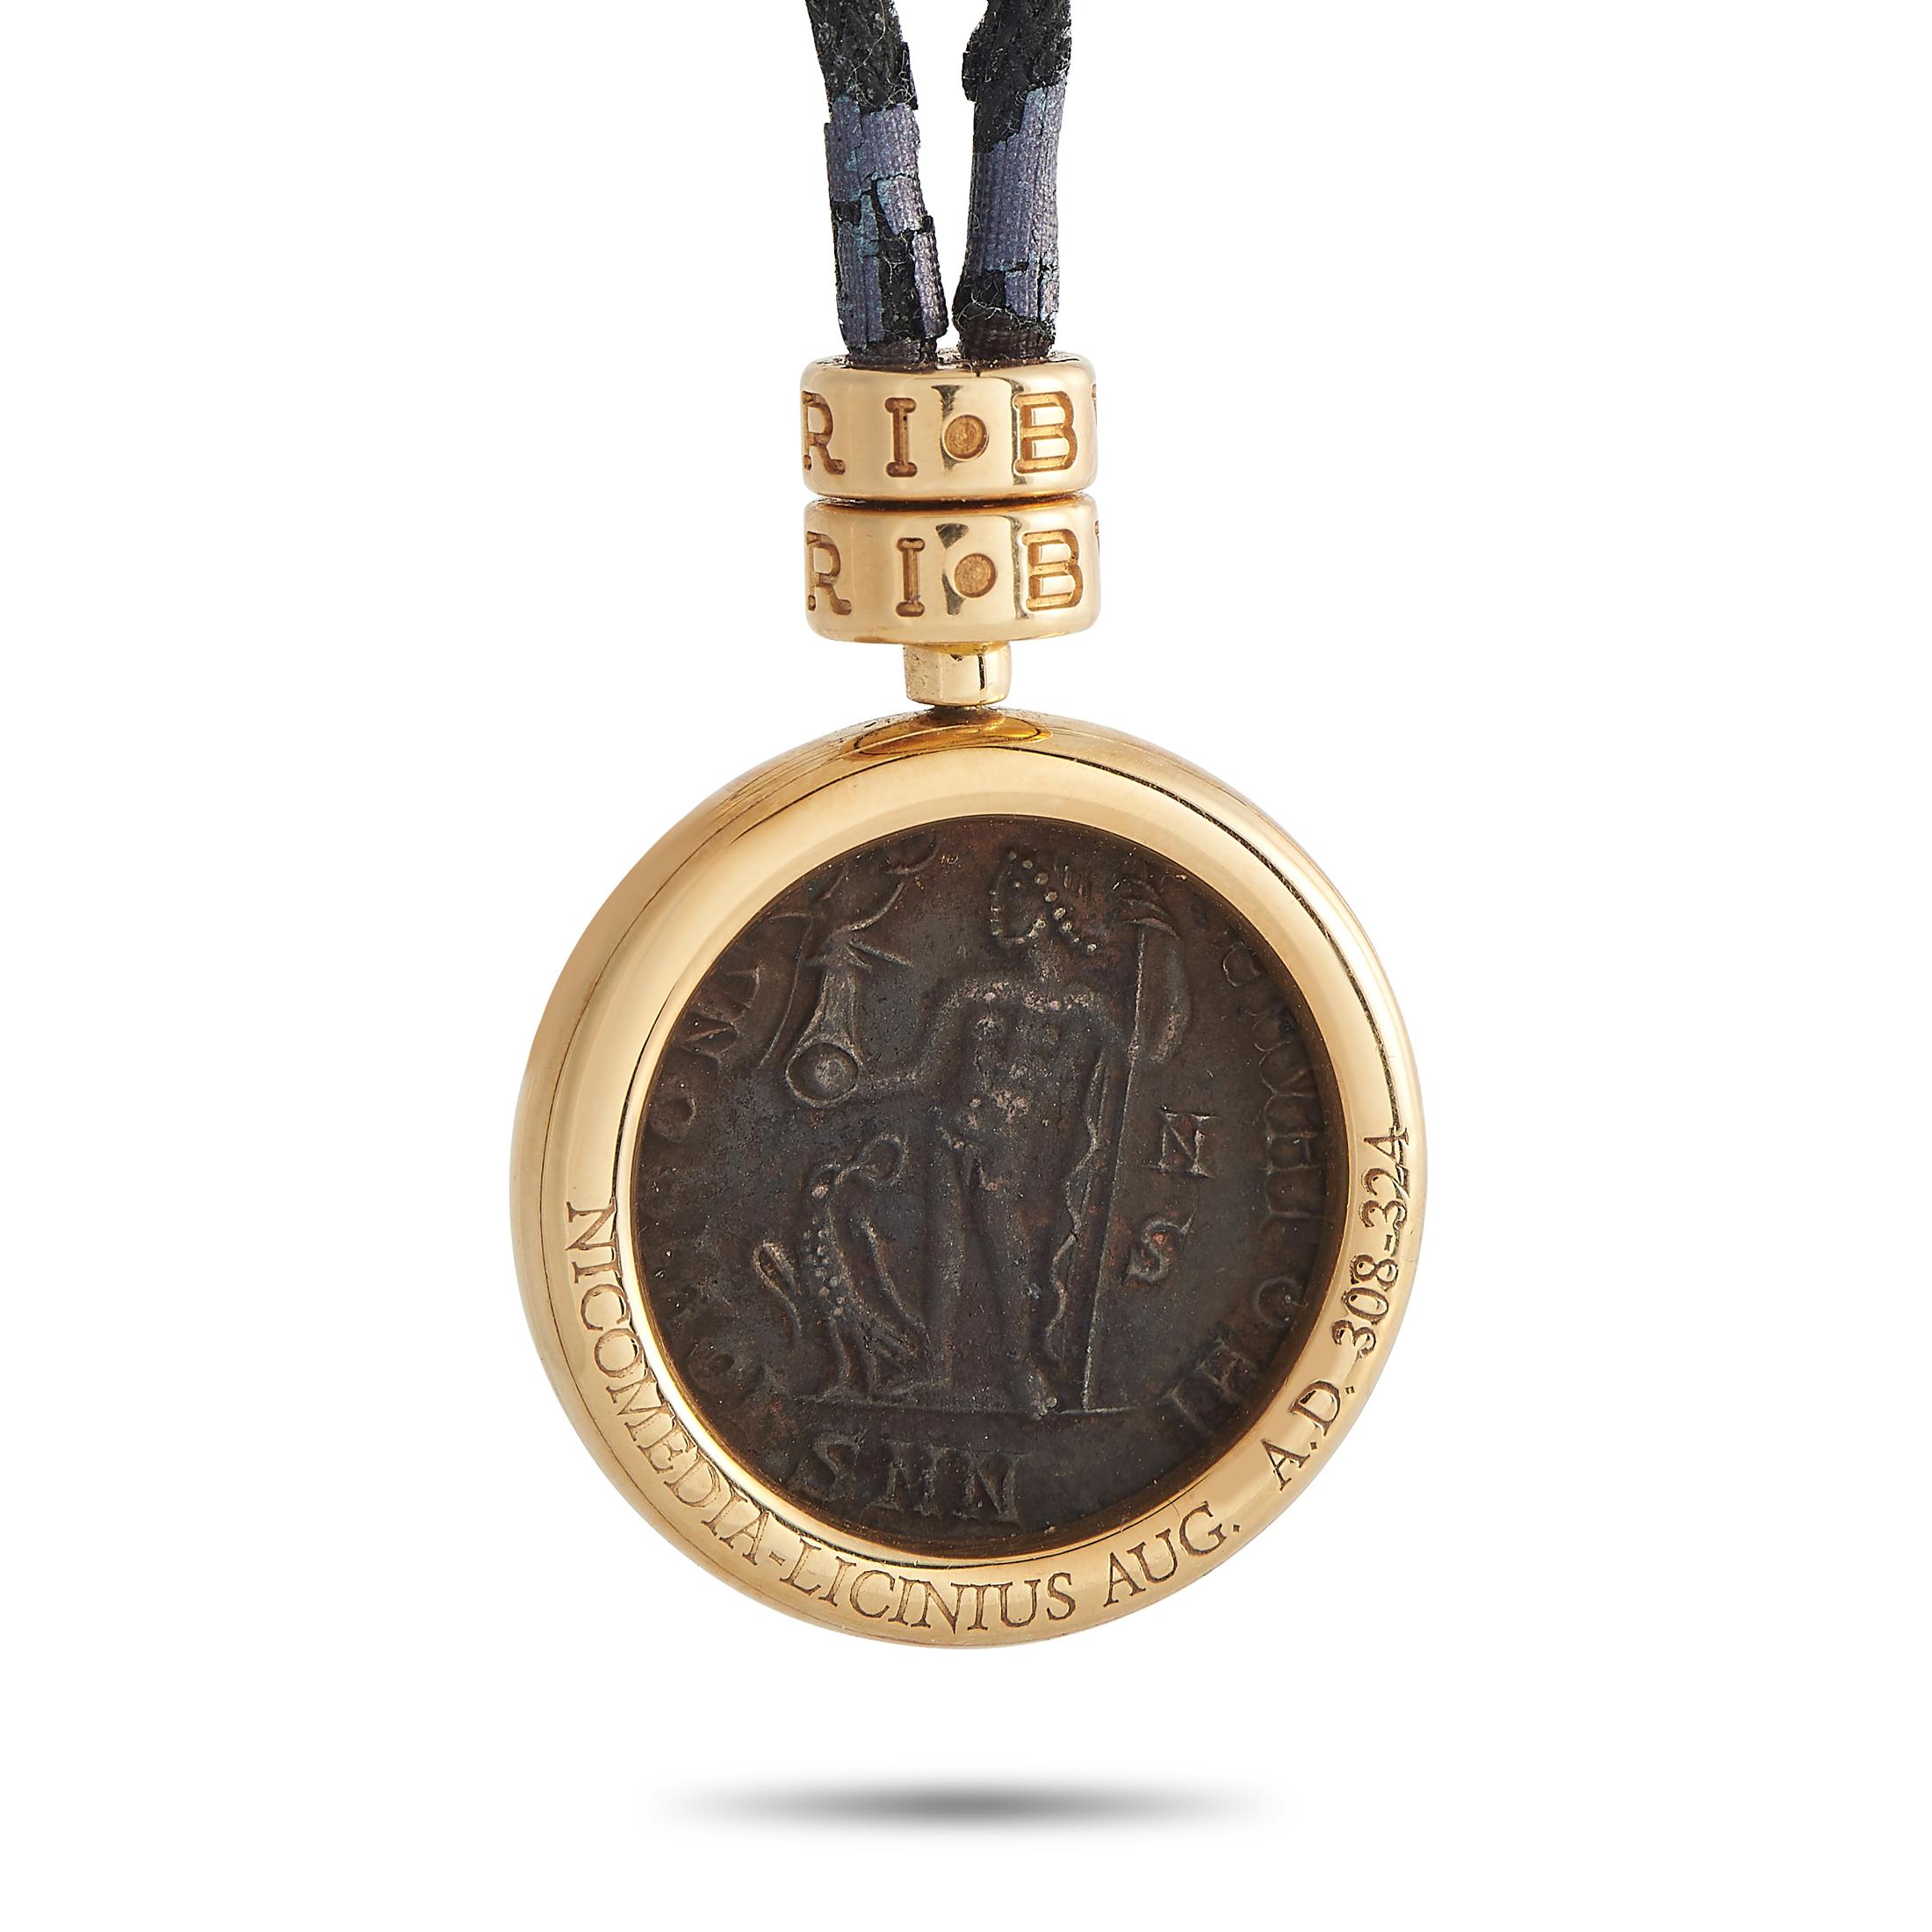 Ce collier de la maison de luxe italienne Bvlgari rend hommage à Rome, à son histoire et à ses traditions. Il porte une pièce de monnaie ancienne sertie dans un cadre rond en or jaune 18 carats. Le fermoir et la boucle du collier à cordon noir sont